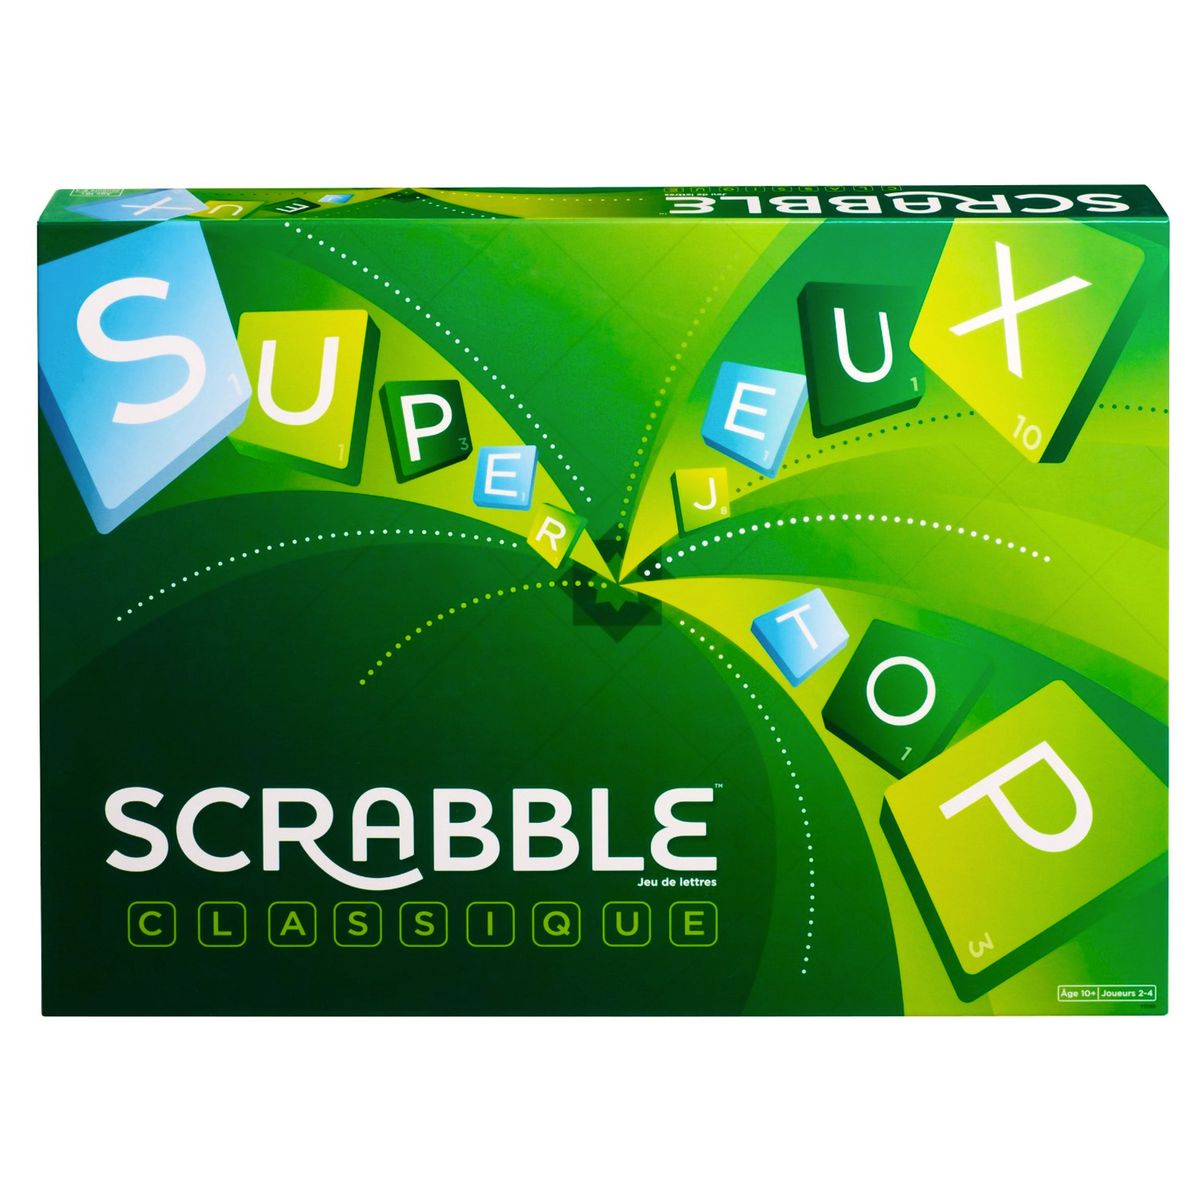 Acheter Scrabble à Paris chez Robin des Jeux